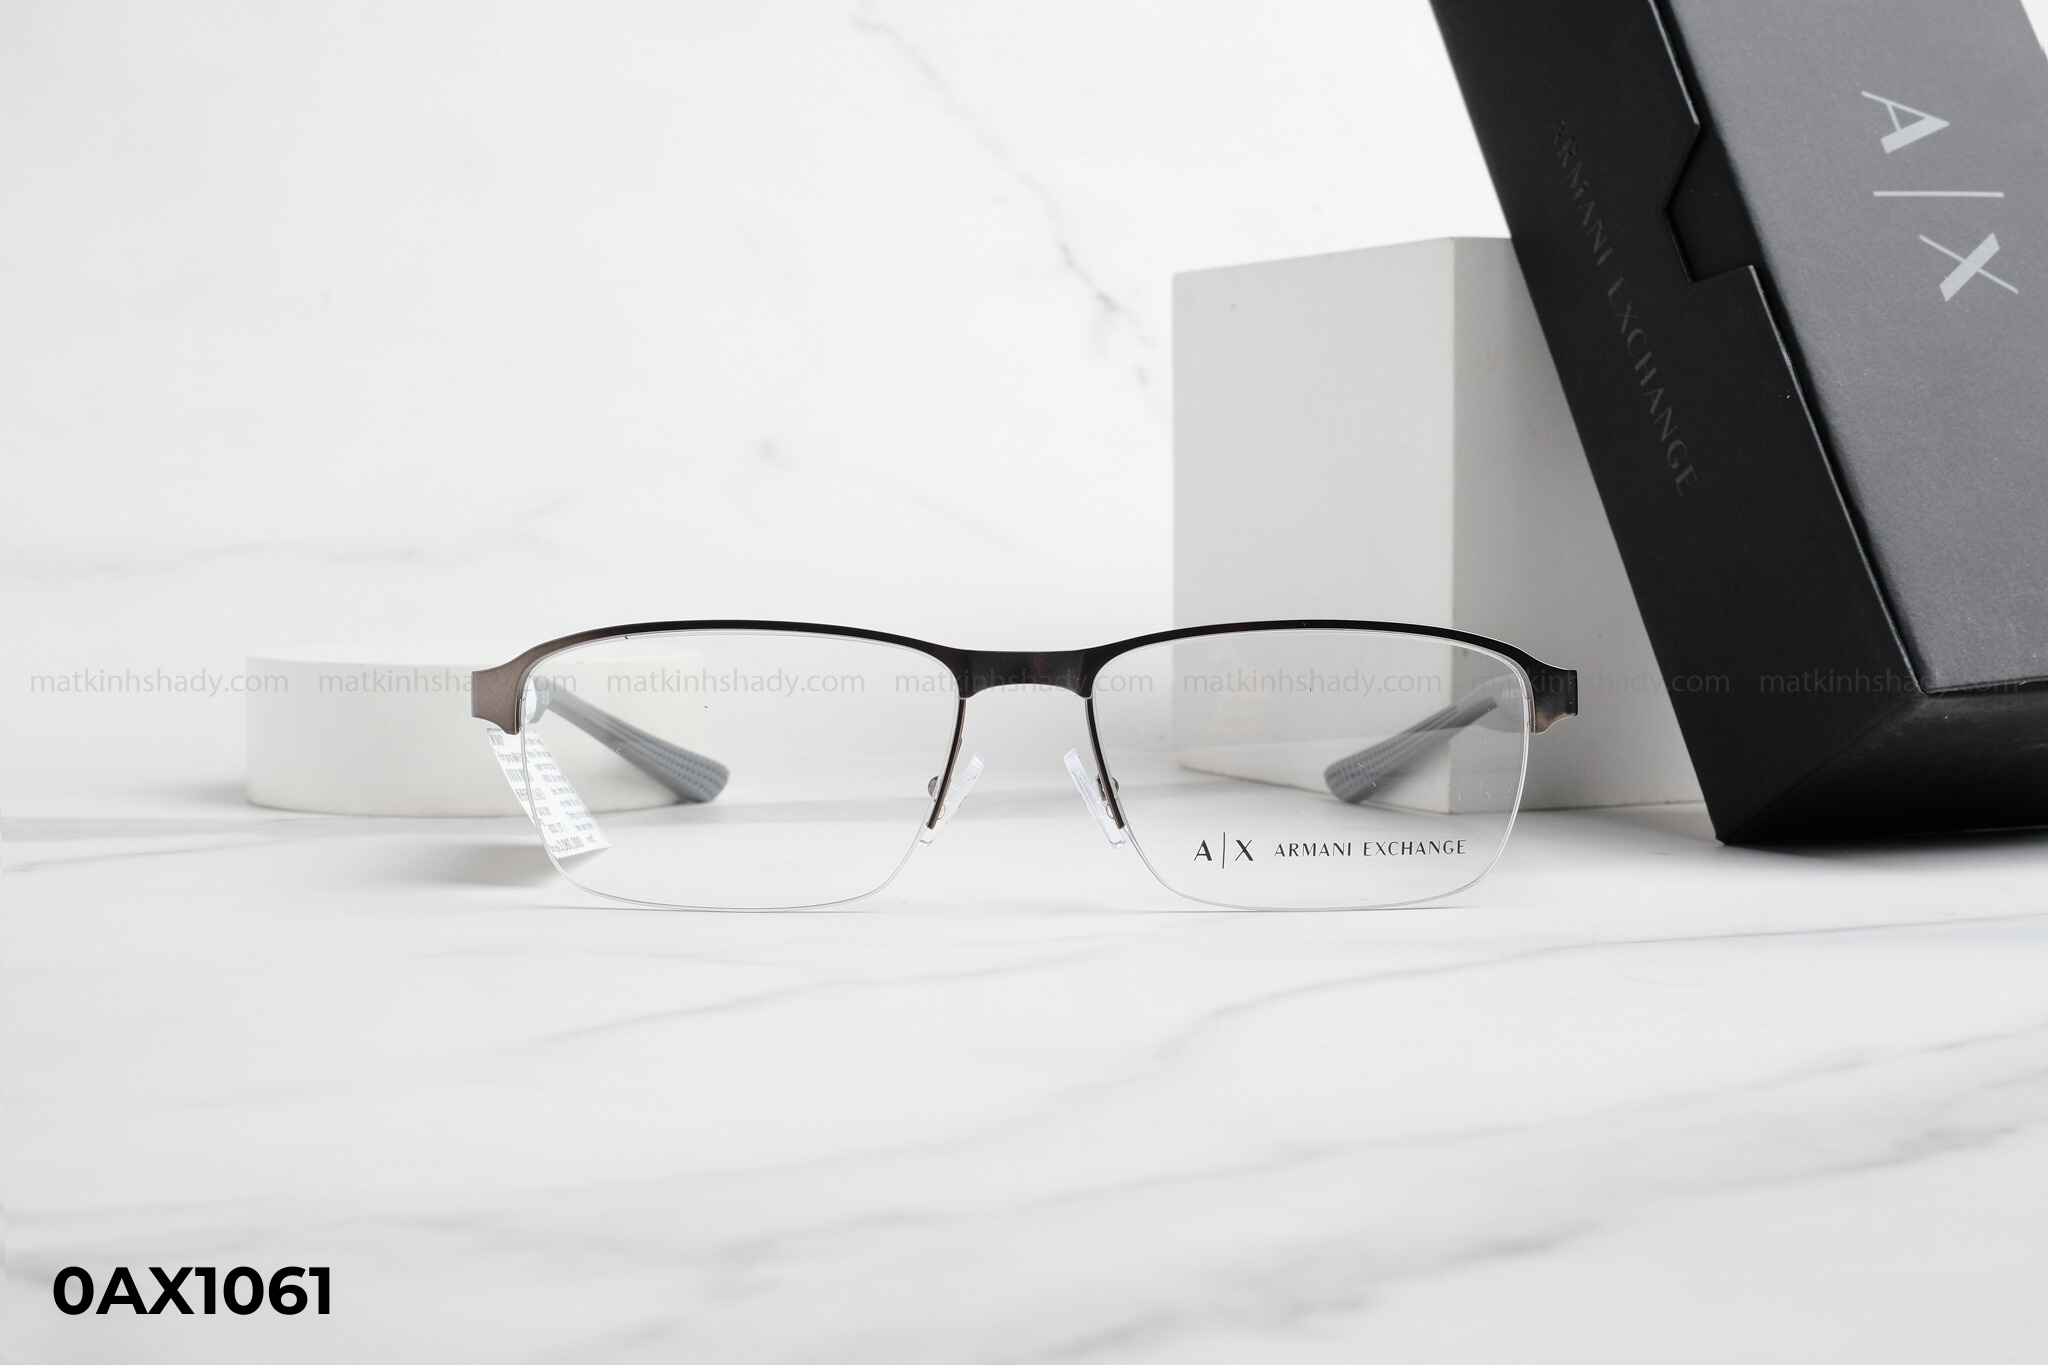  Armani Exchange Eyewear - Glasses - 0AX1061 